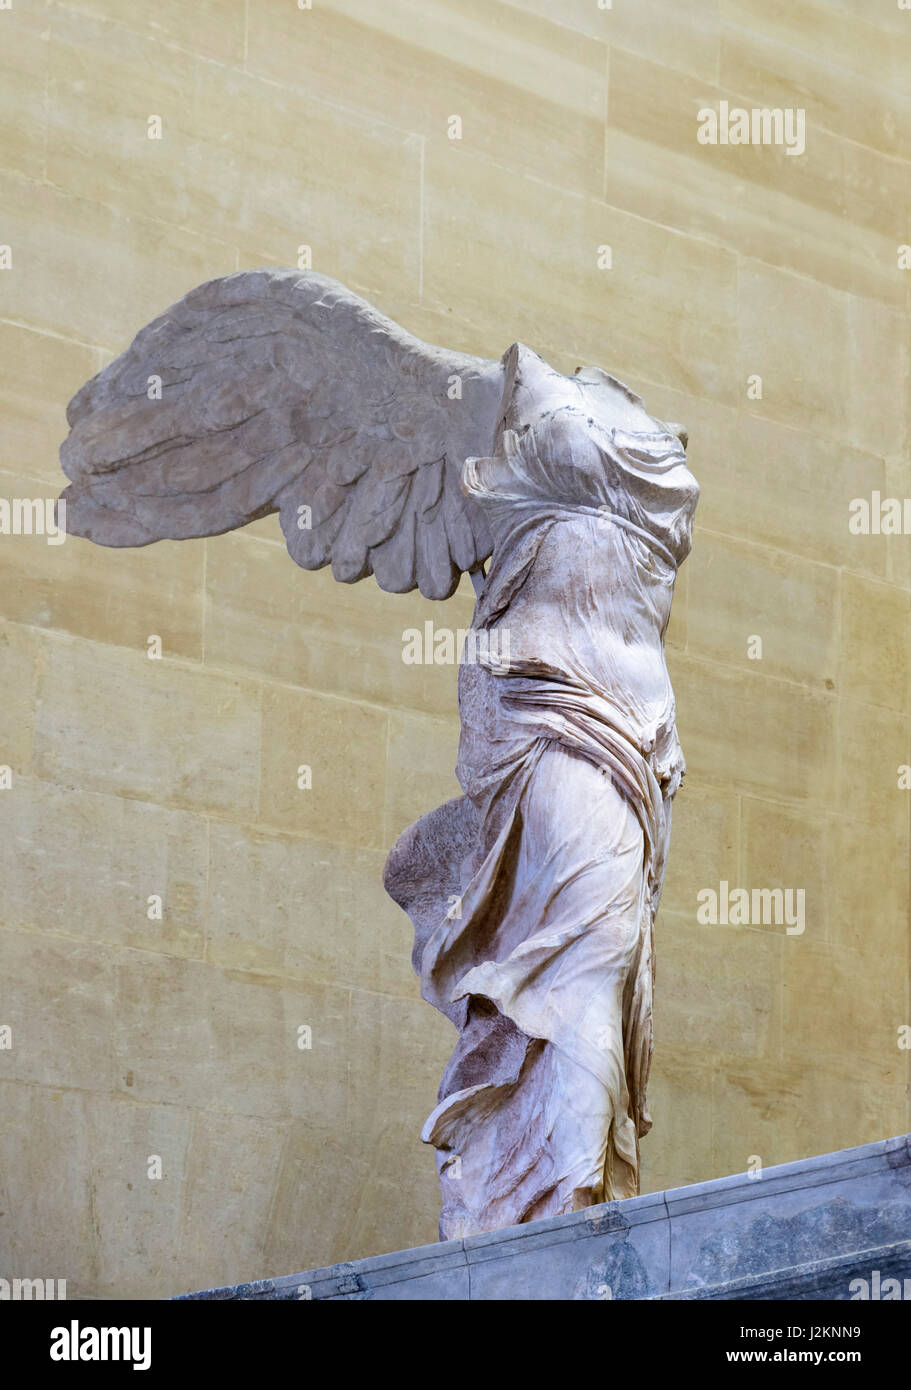 La Vittoria Alata di Samotracia o la Nike alata, al museo del Louvre di Parigi, Francia. La scultura della dea greca, Nike, risale al II secolo A.C. Foto Stock